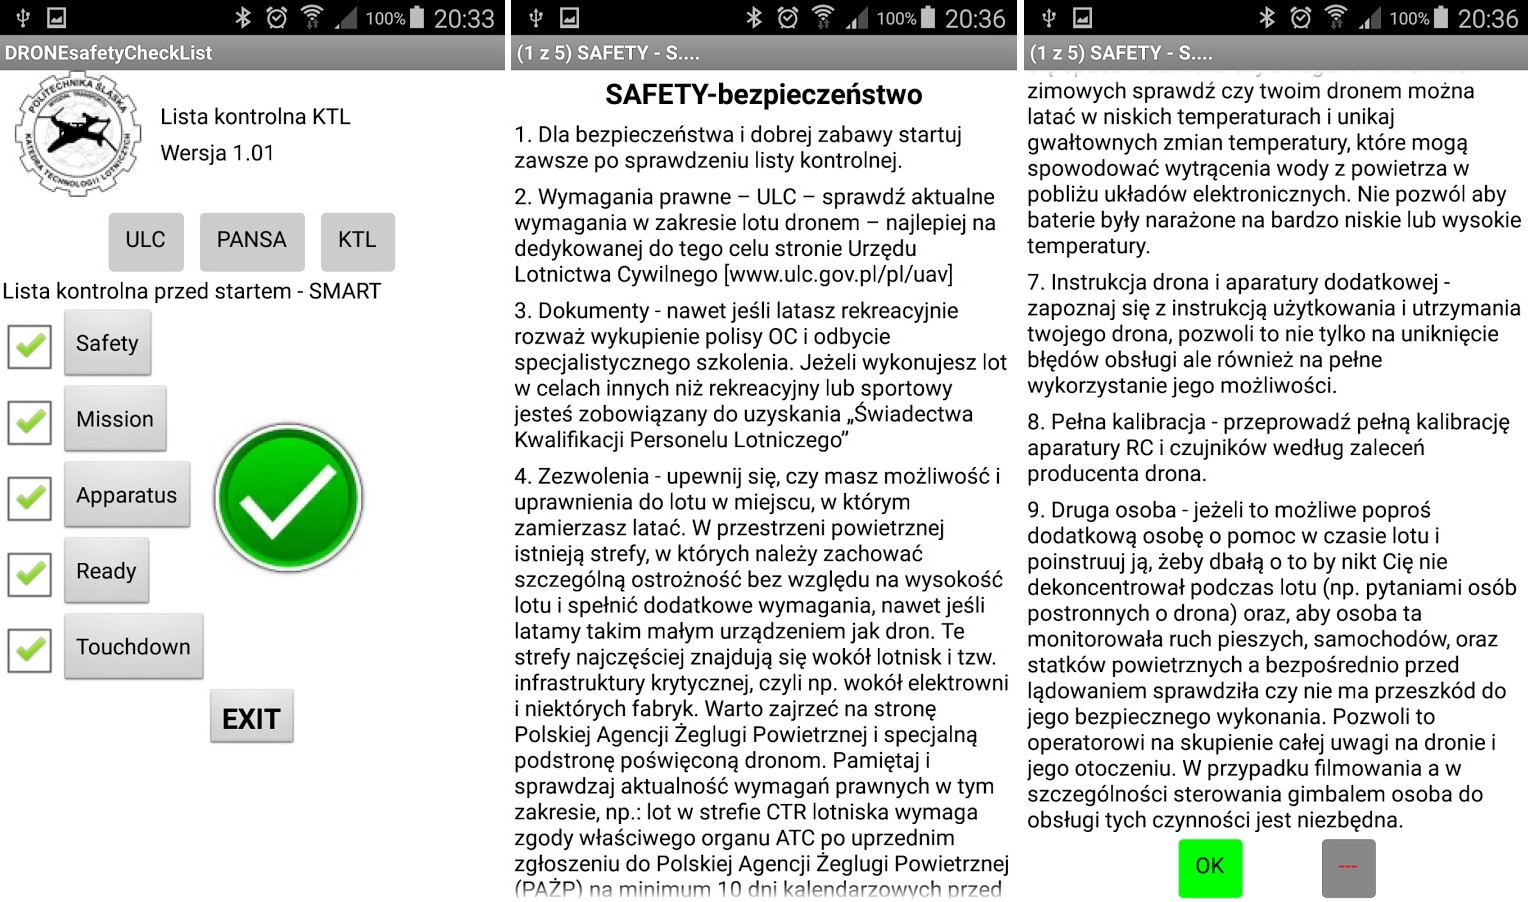 „DRONE safety Checklist” – czyli polska aplikacja na urządzenia mobilne, wspomagająca pracę operatora drona.